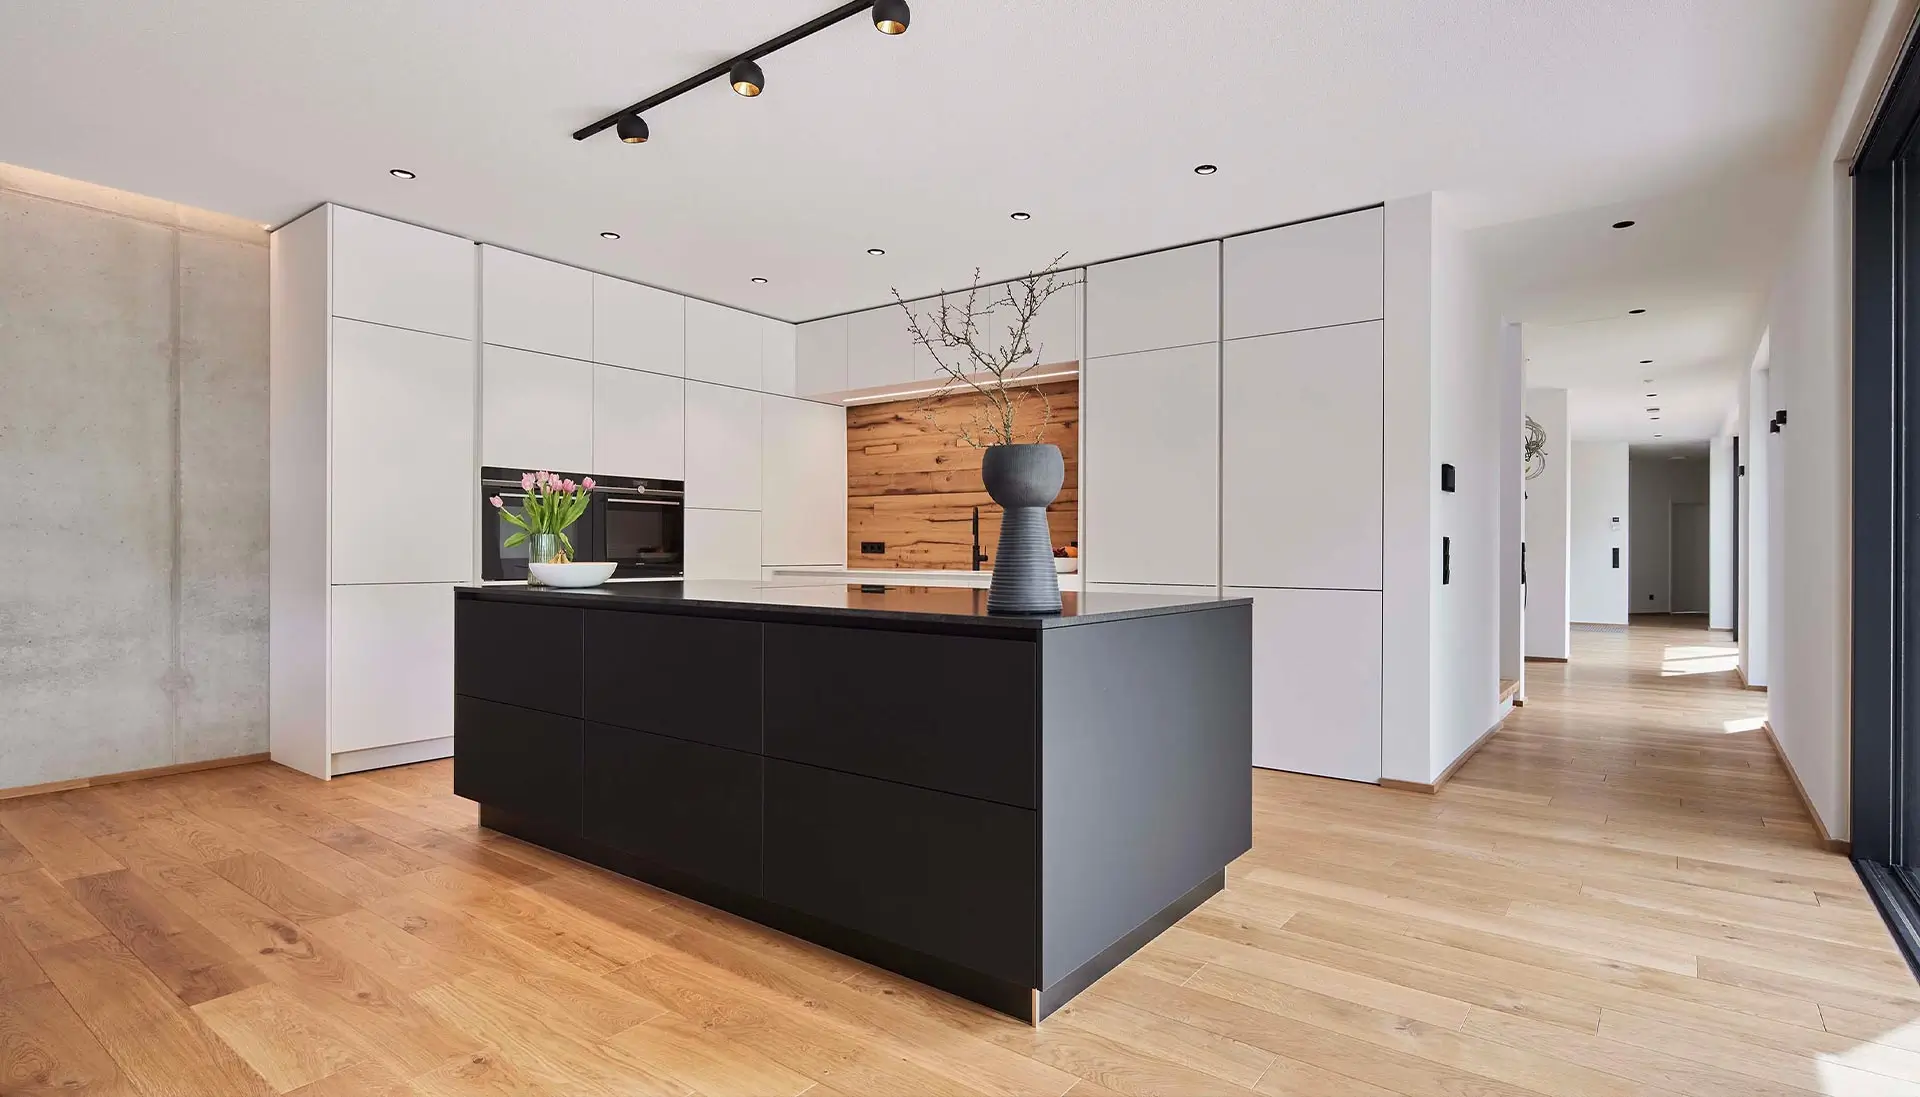 Die elegante, moderne Küche ist Teil eines offenen Wohnkonzepts. Versteckt hinter Raumhohen-Schrankfronten befindet sich der Zugang zur Speisekammer- eine wahre premium Küche.